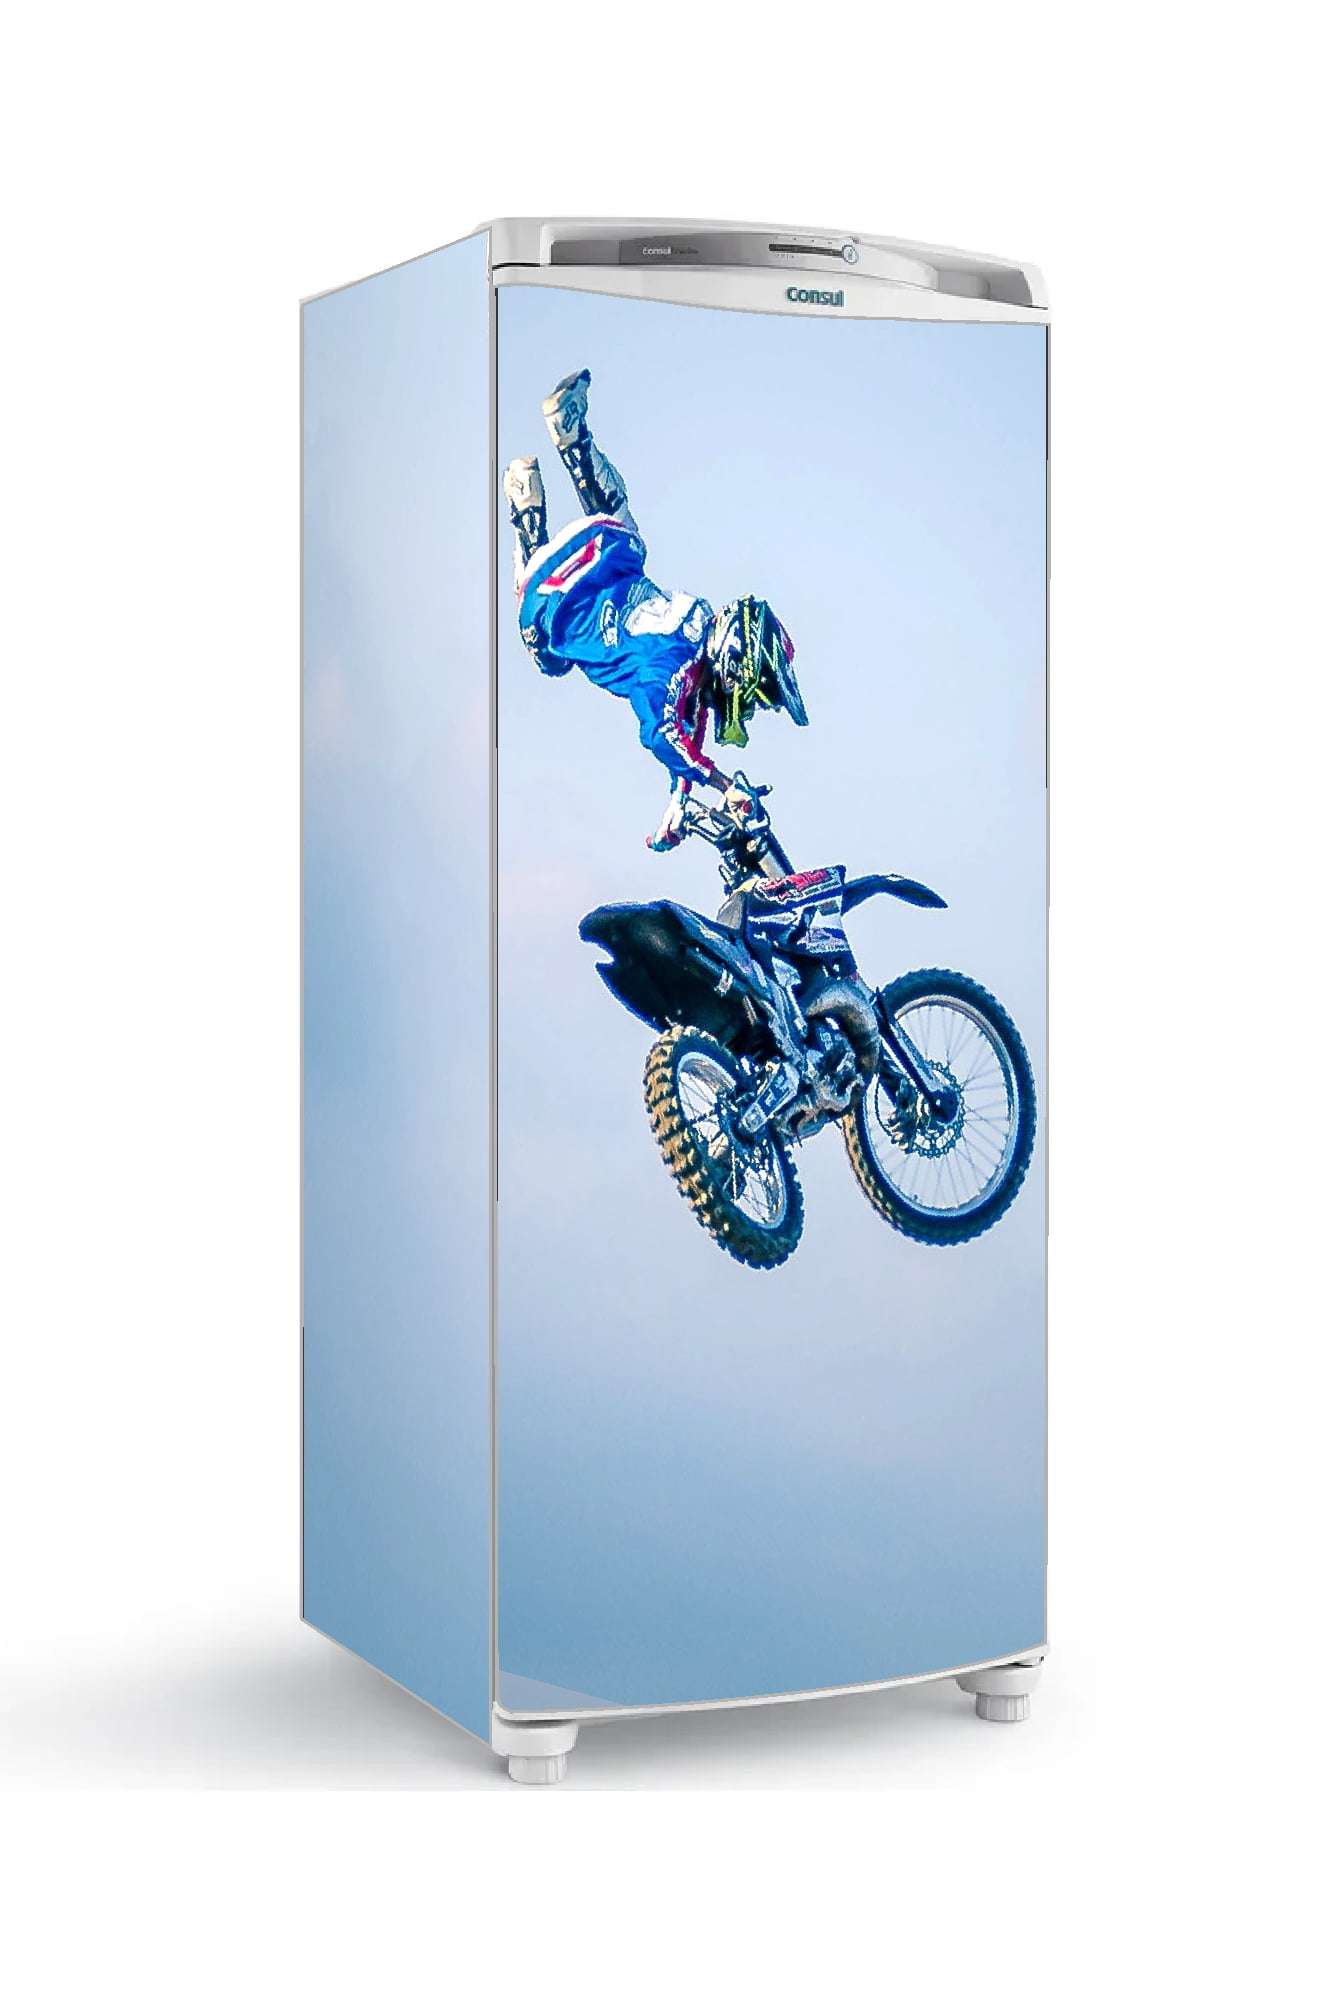 adesivo geladeira envelopamento salto motocross ceu azul